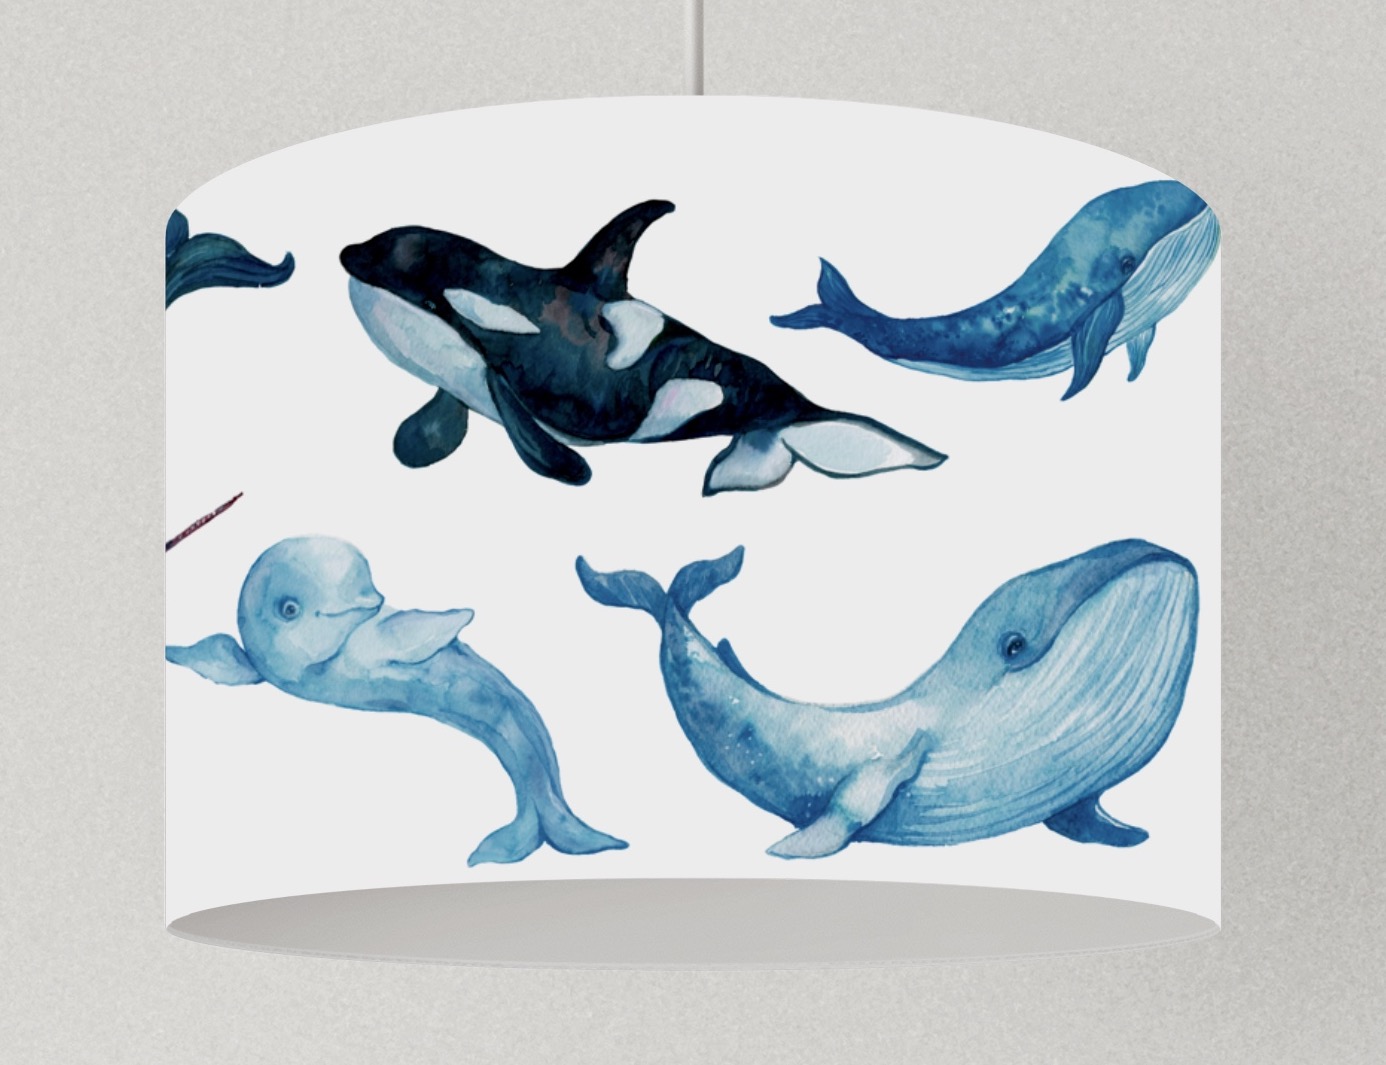 Lampe Wale Meerestiere viele Farben Lampenschirm Kinderzimmer Wale